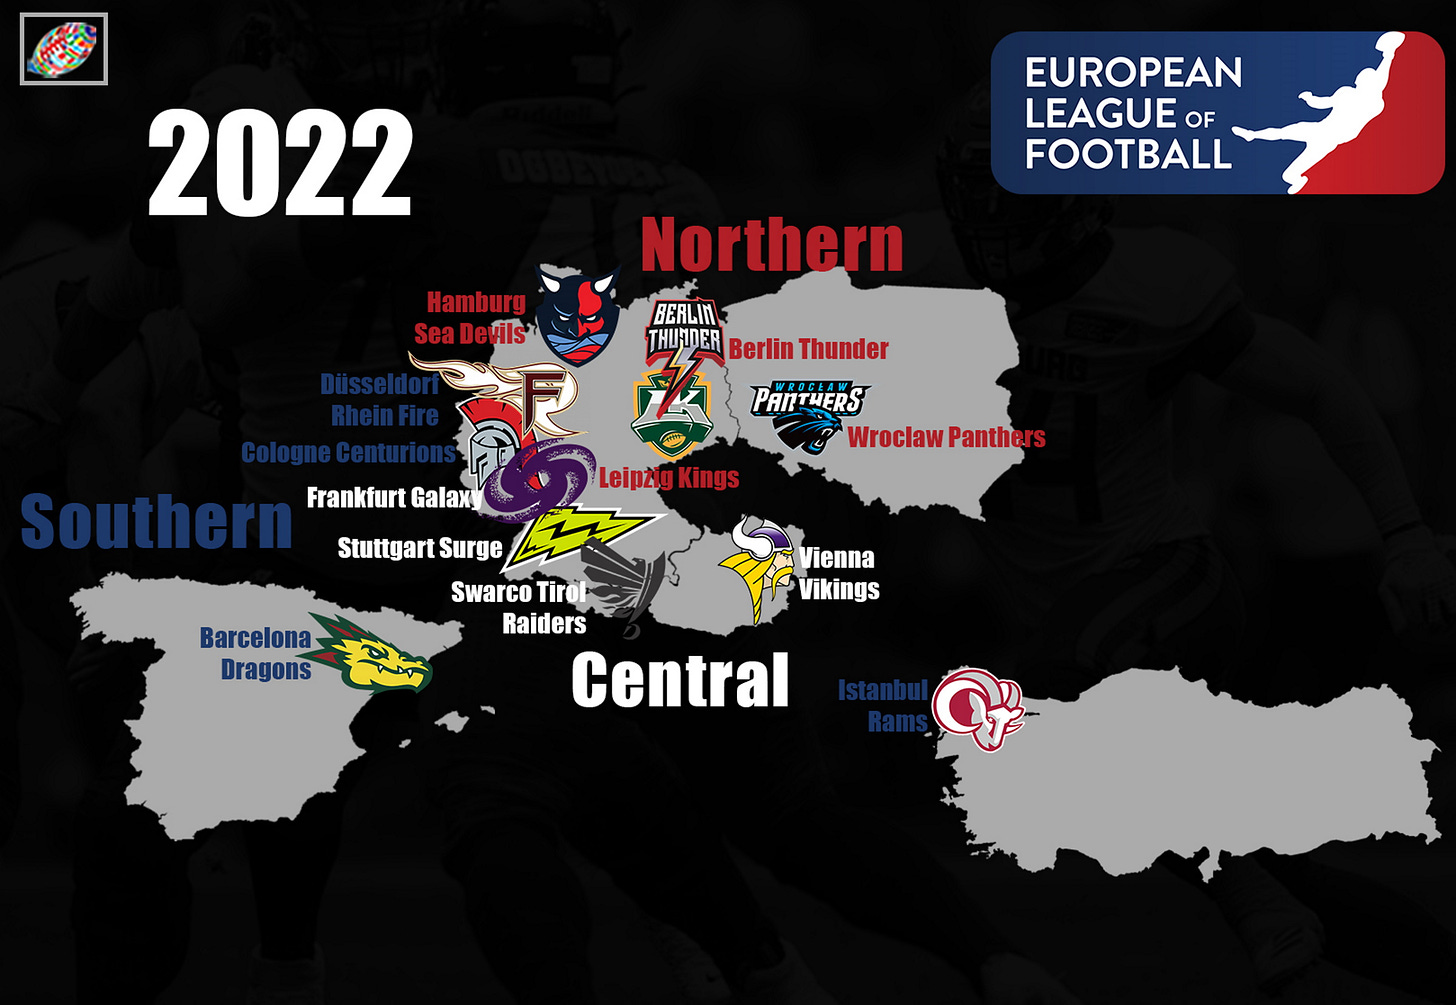 European League of Football countries